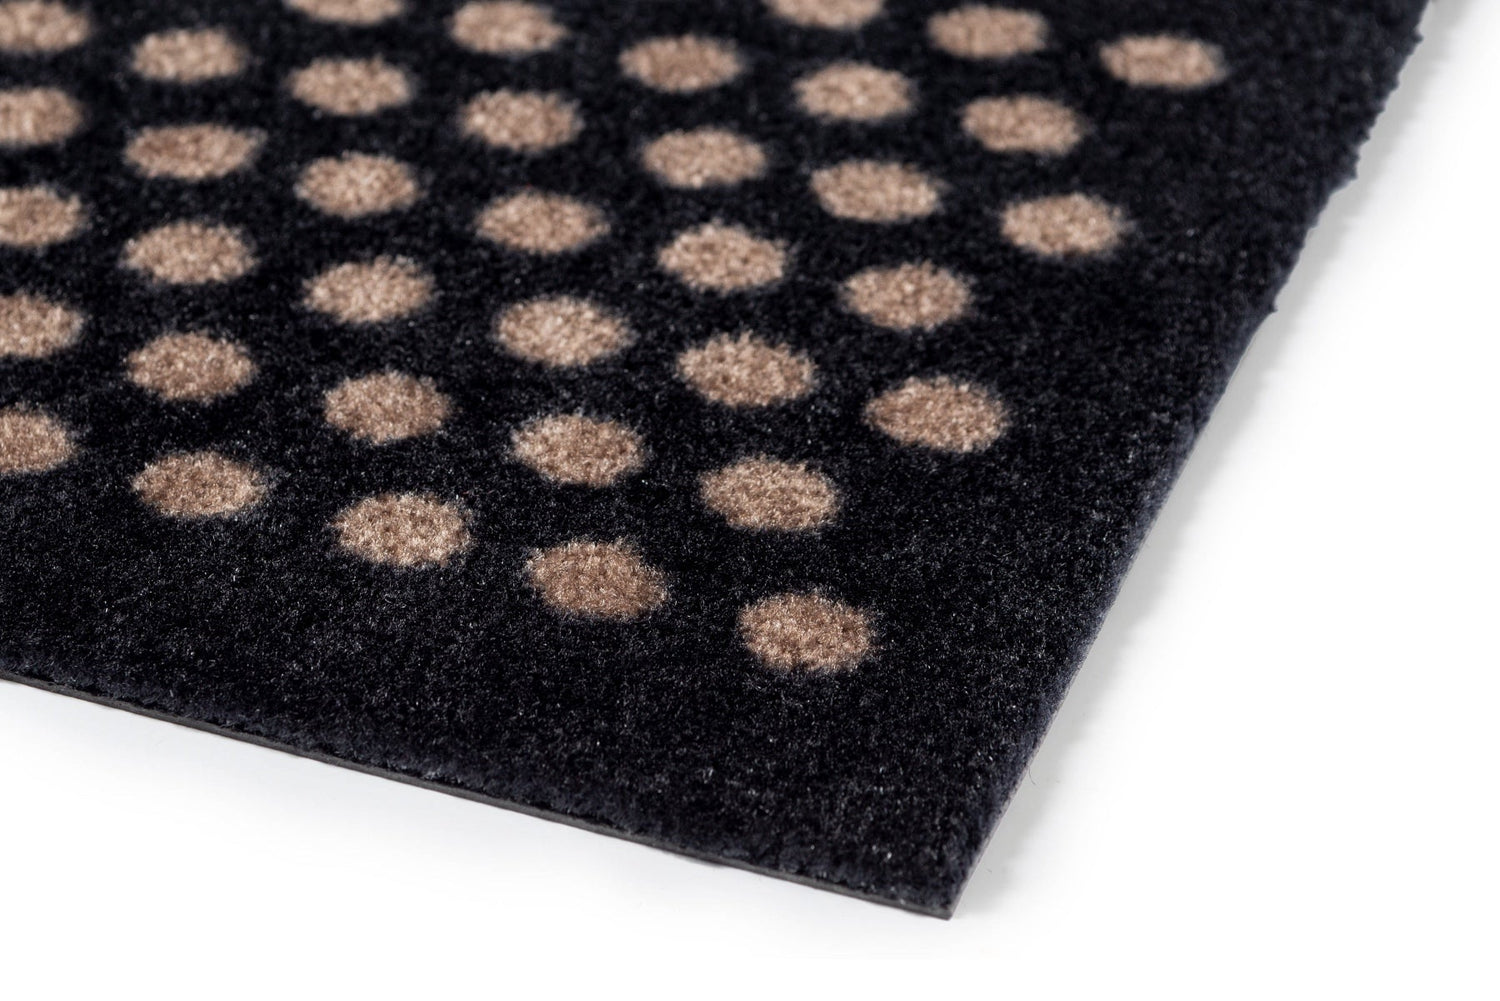 Bodenmatte 90 x 200 cm - Punkte/schwarzer Sand